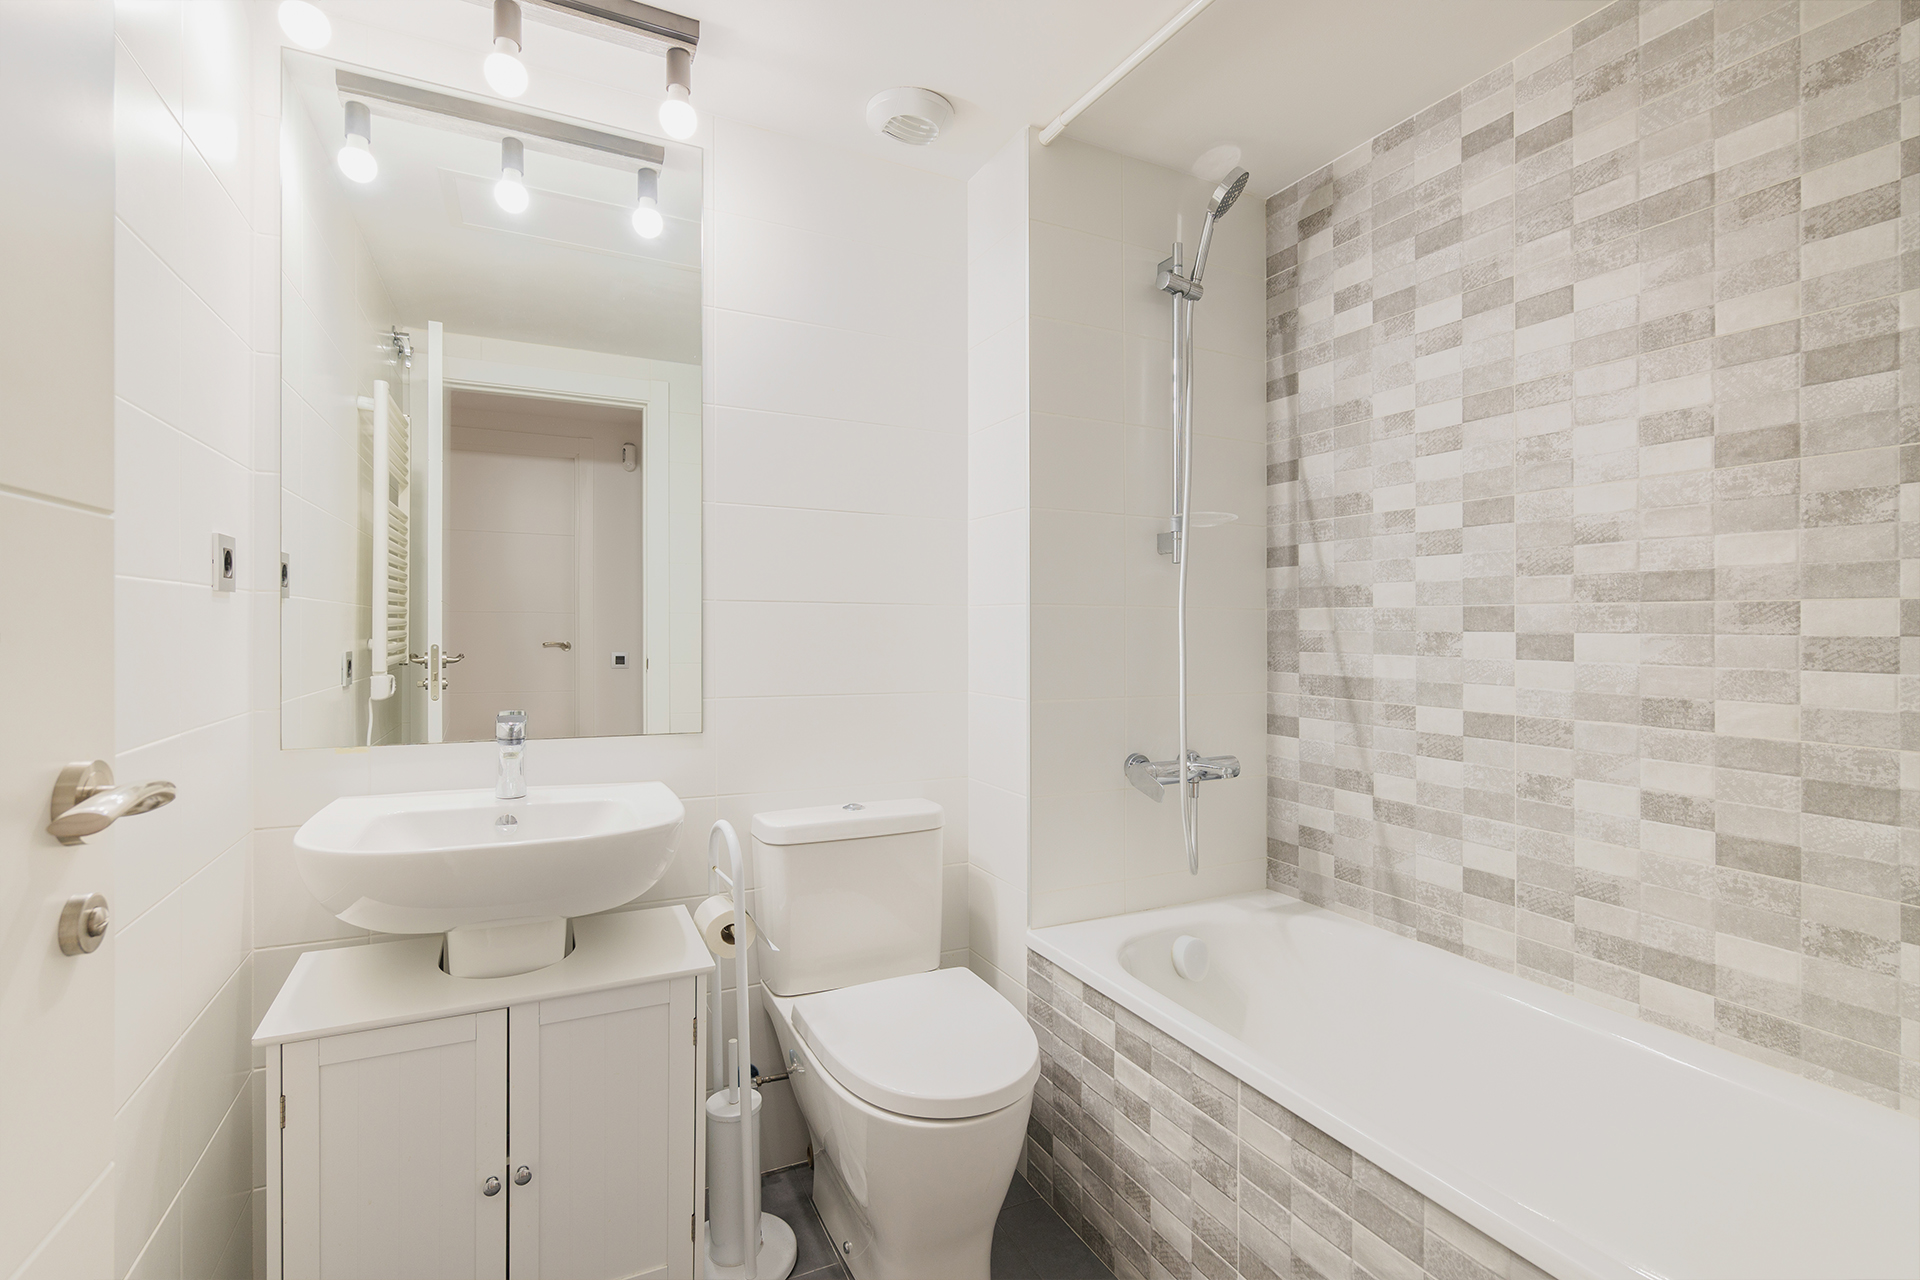 Интерьер ванной комнаты маленького размера фото » Современный дизайн на lilyhammer.ru